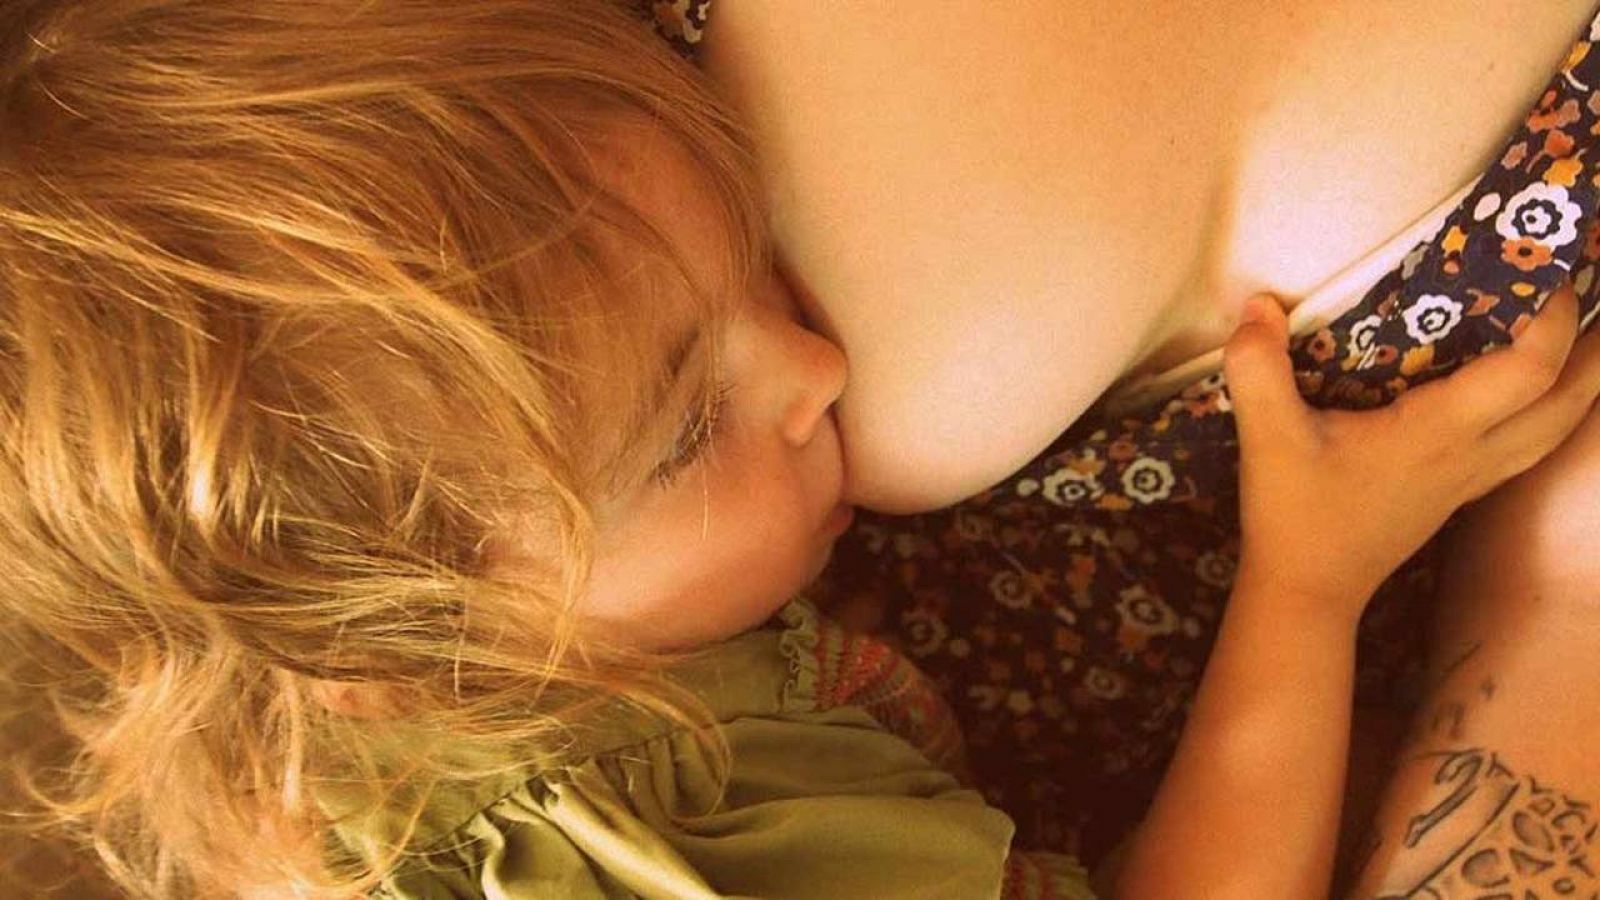 El estudio sugiere que la leche materna es una fuente importante de exposición a estas sustancias tóxicas durante la infancia